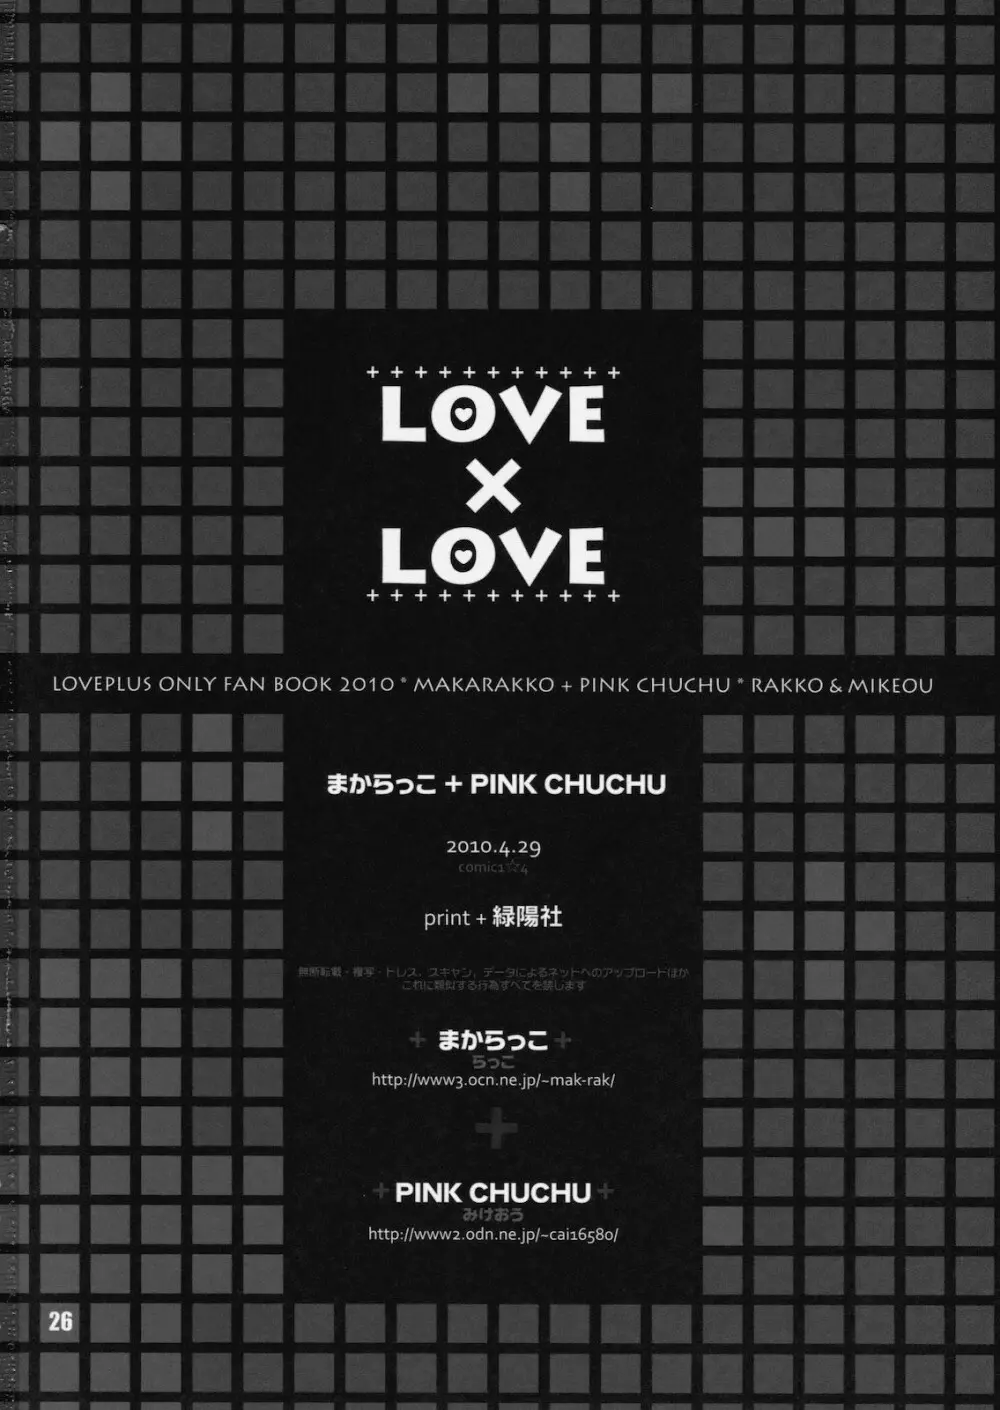 (COMIC1☆4) [まからっこ、PINK CHUCHU (らっこ、みけおう) LOVE X LOVE (ラブプラス) 25ページ